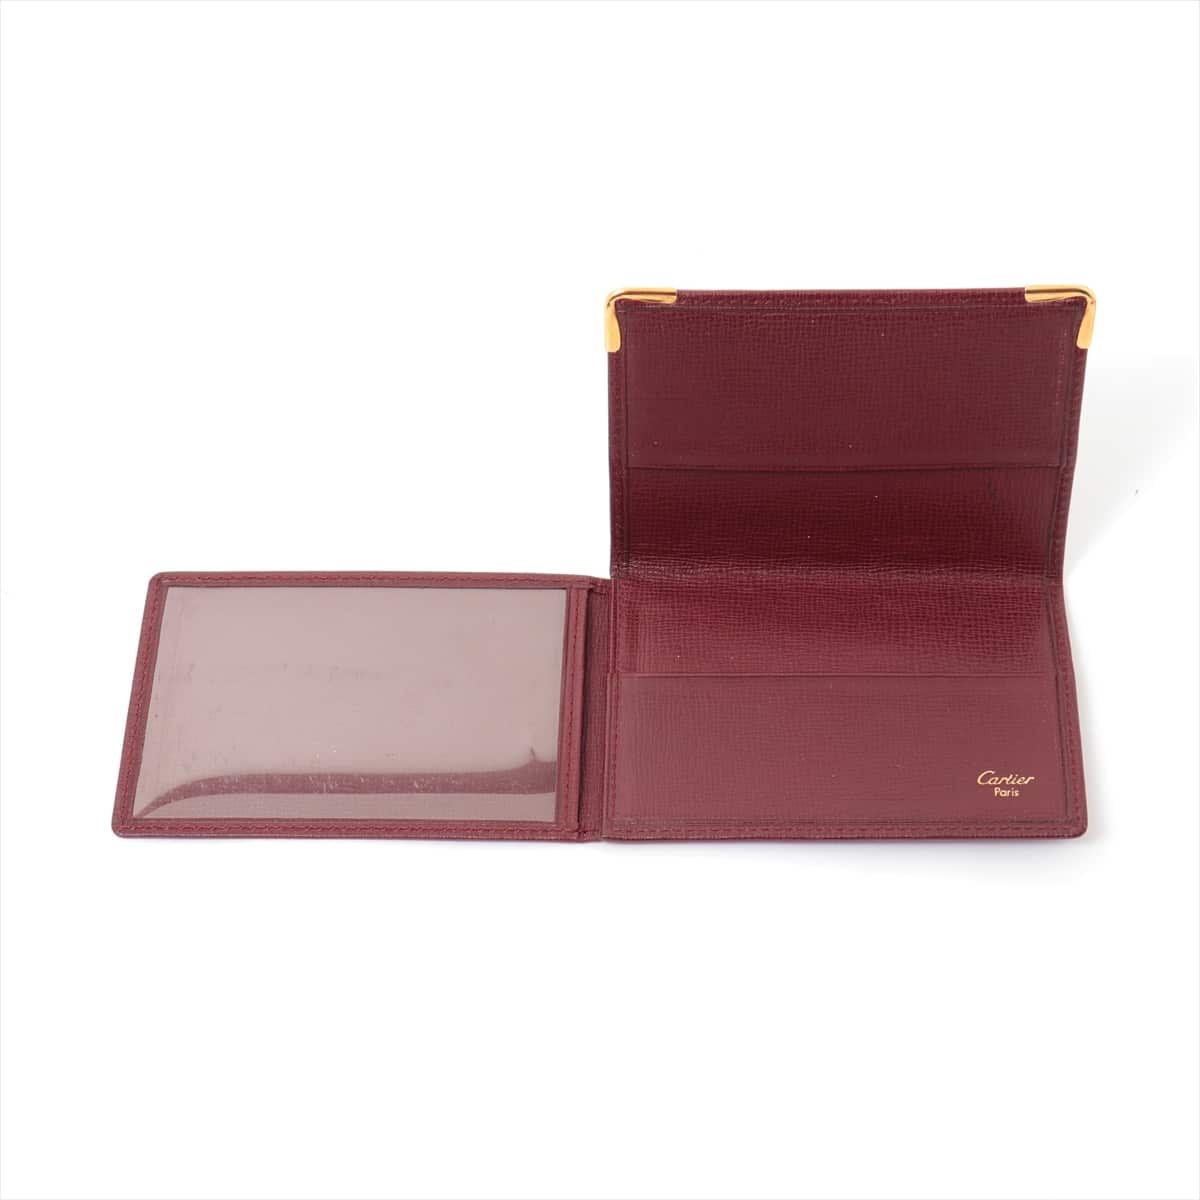 Cartier Must Line Leather Card case Bordeaux